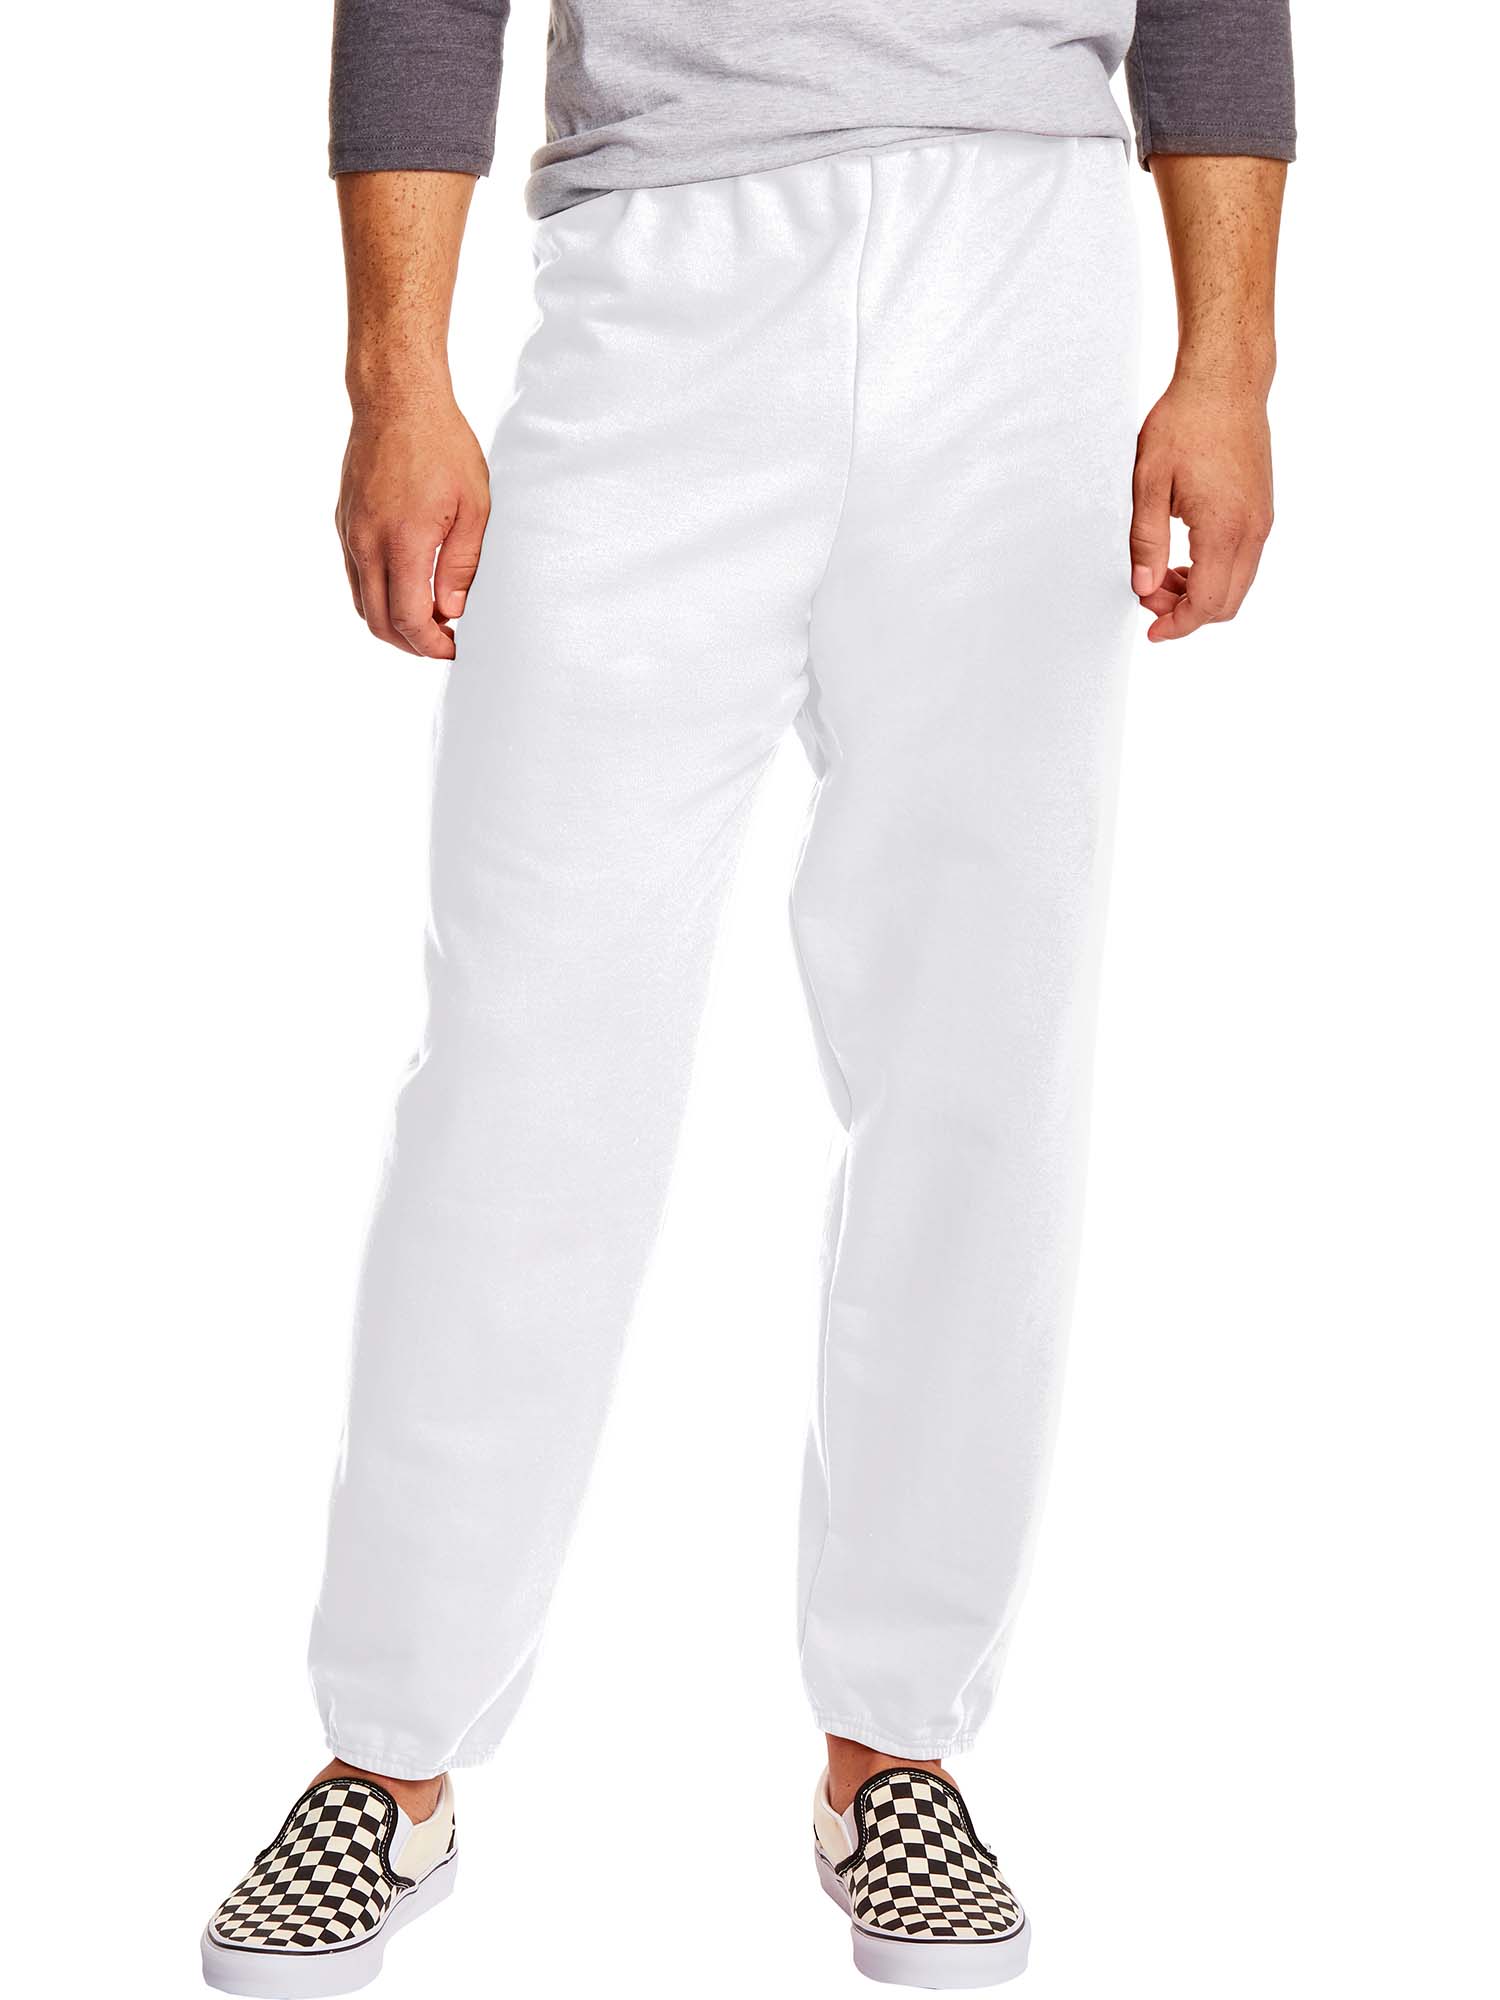 Hanes Men's and Big Men's EcoSmart Fleece Sweatpants, Sizes S-3XL - image 1 of 7